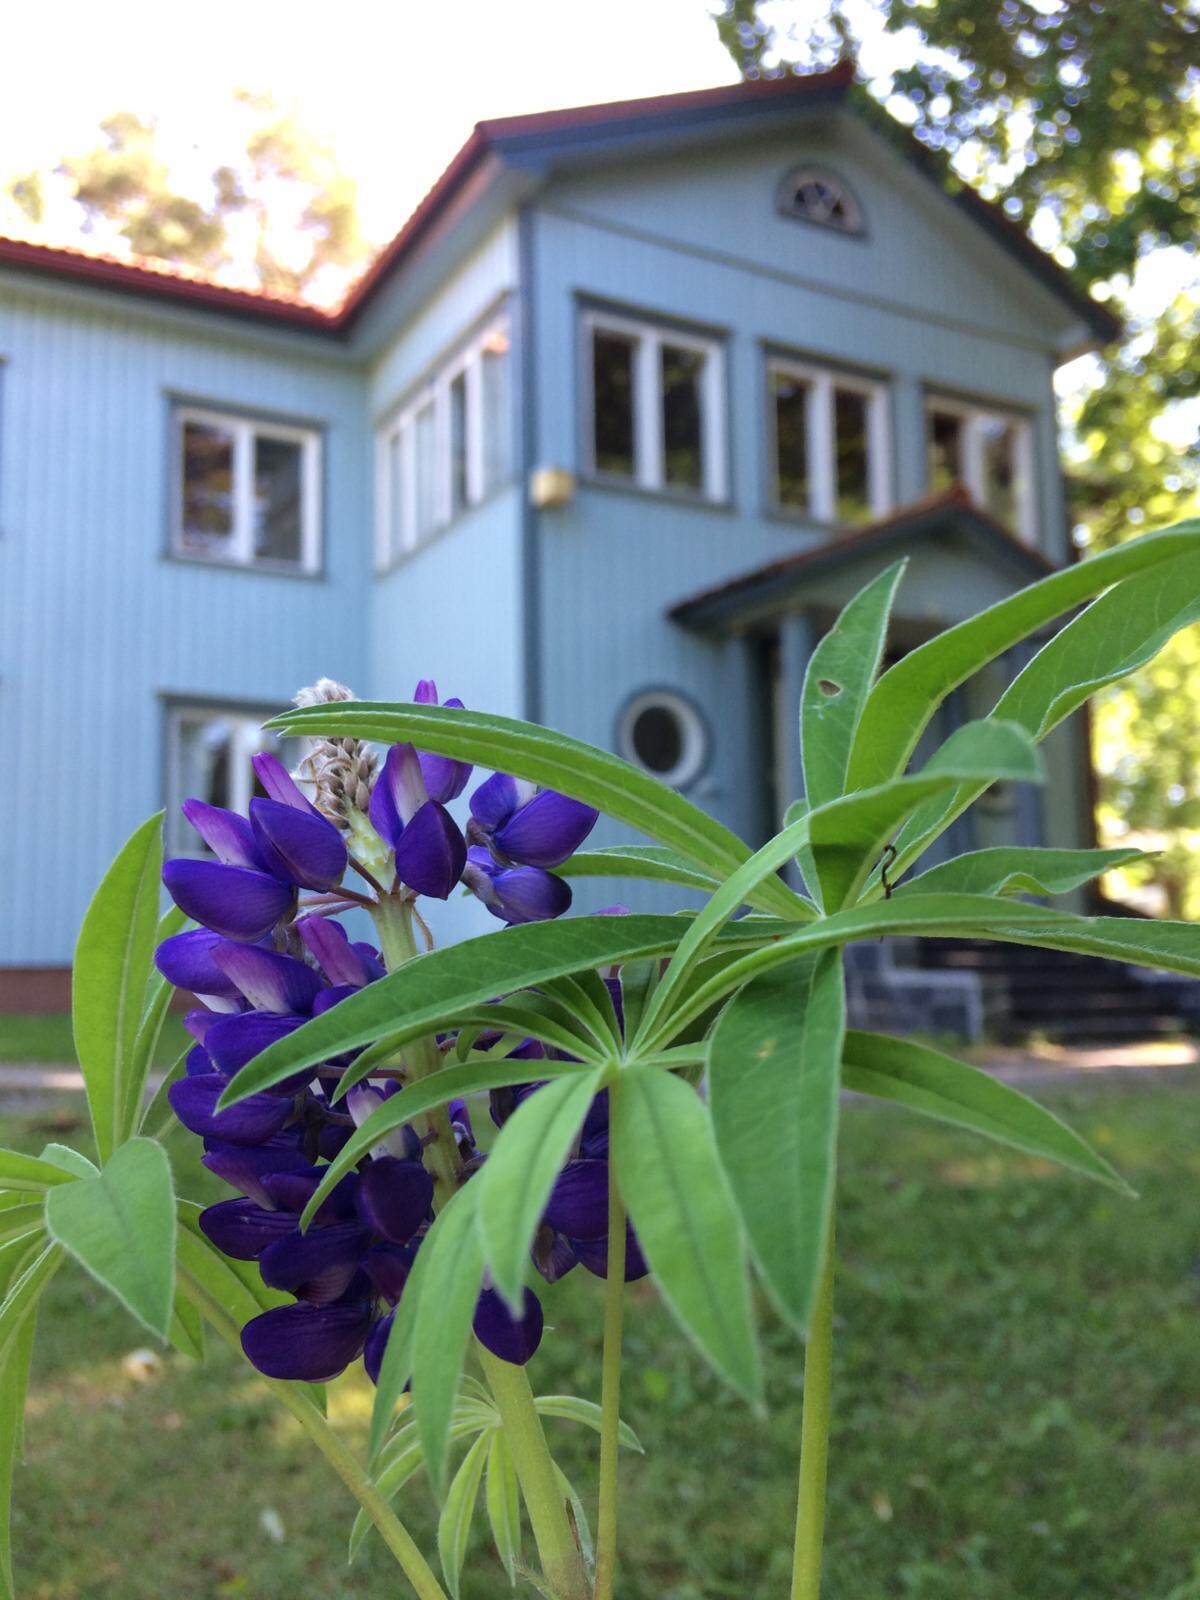 Siikajärvi旁边的蓝屋